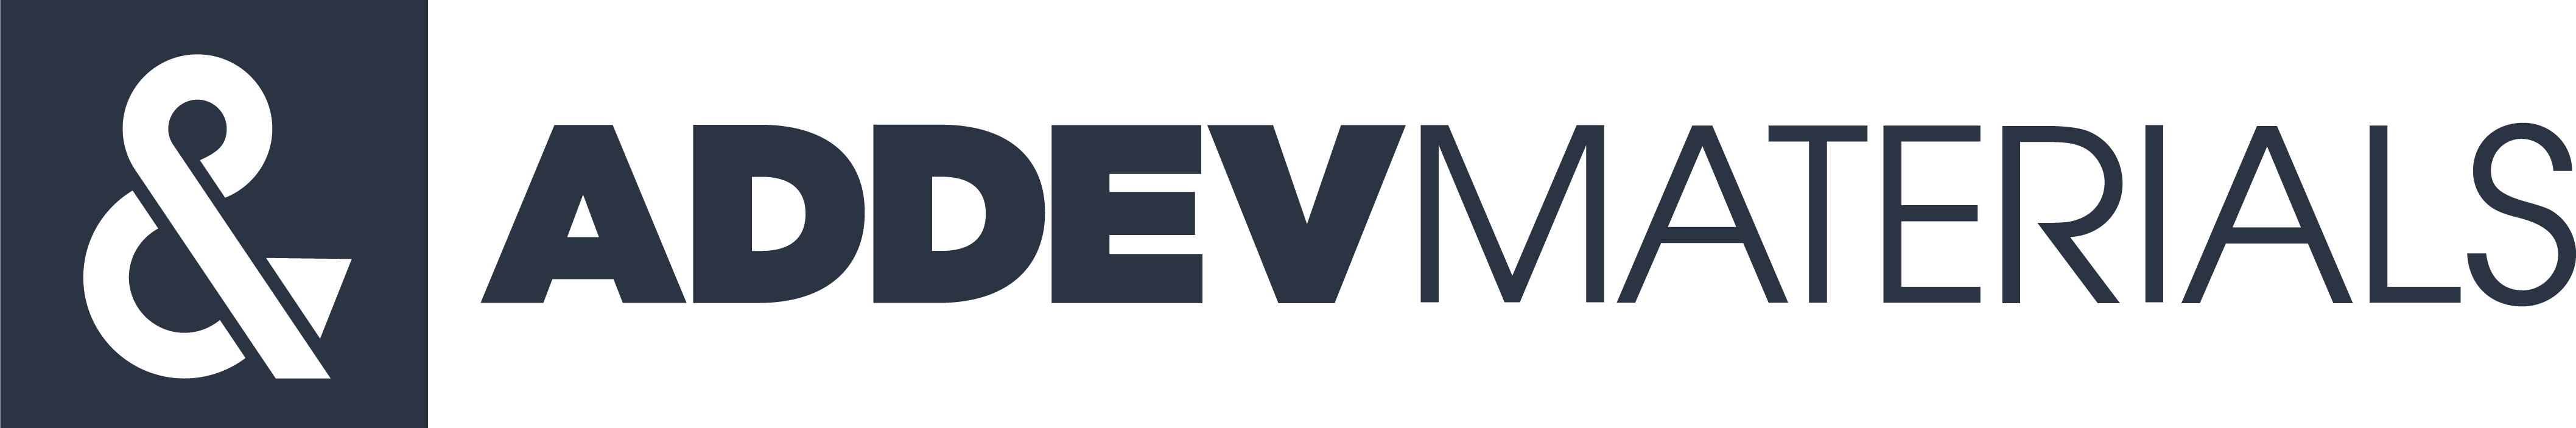 ADDEV Materials logo